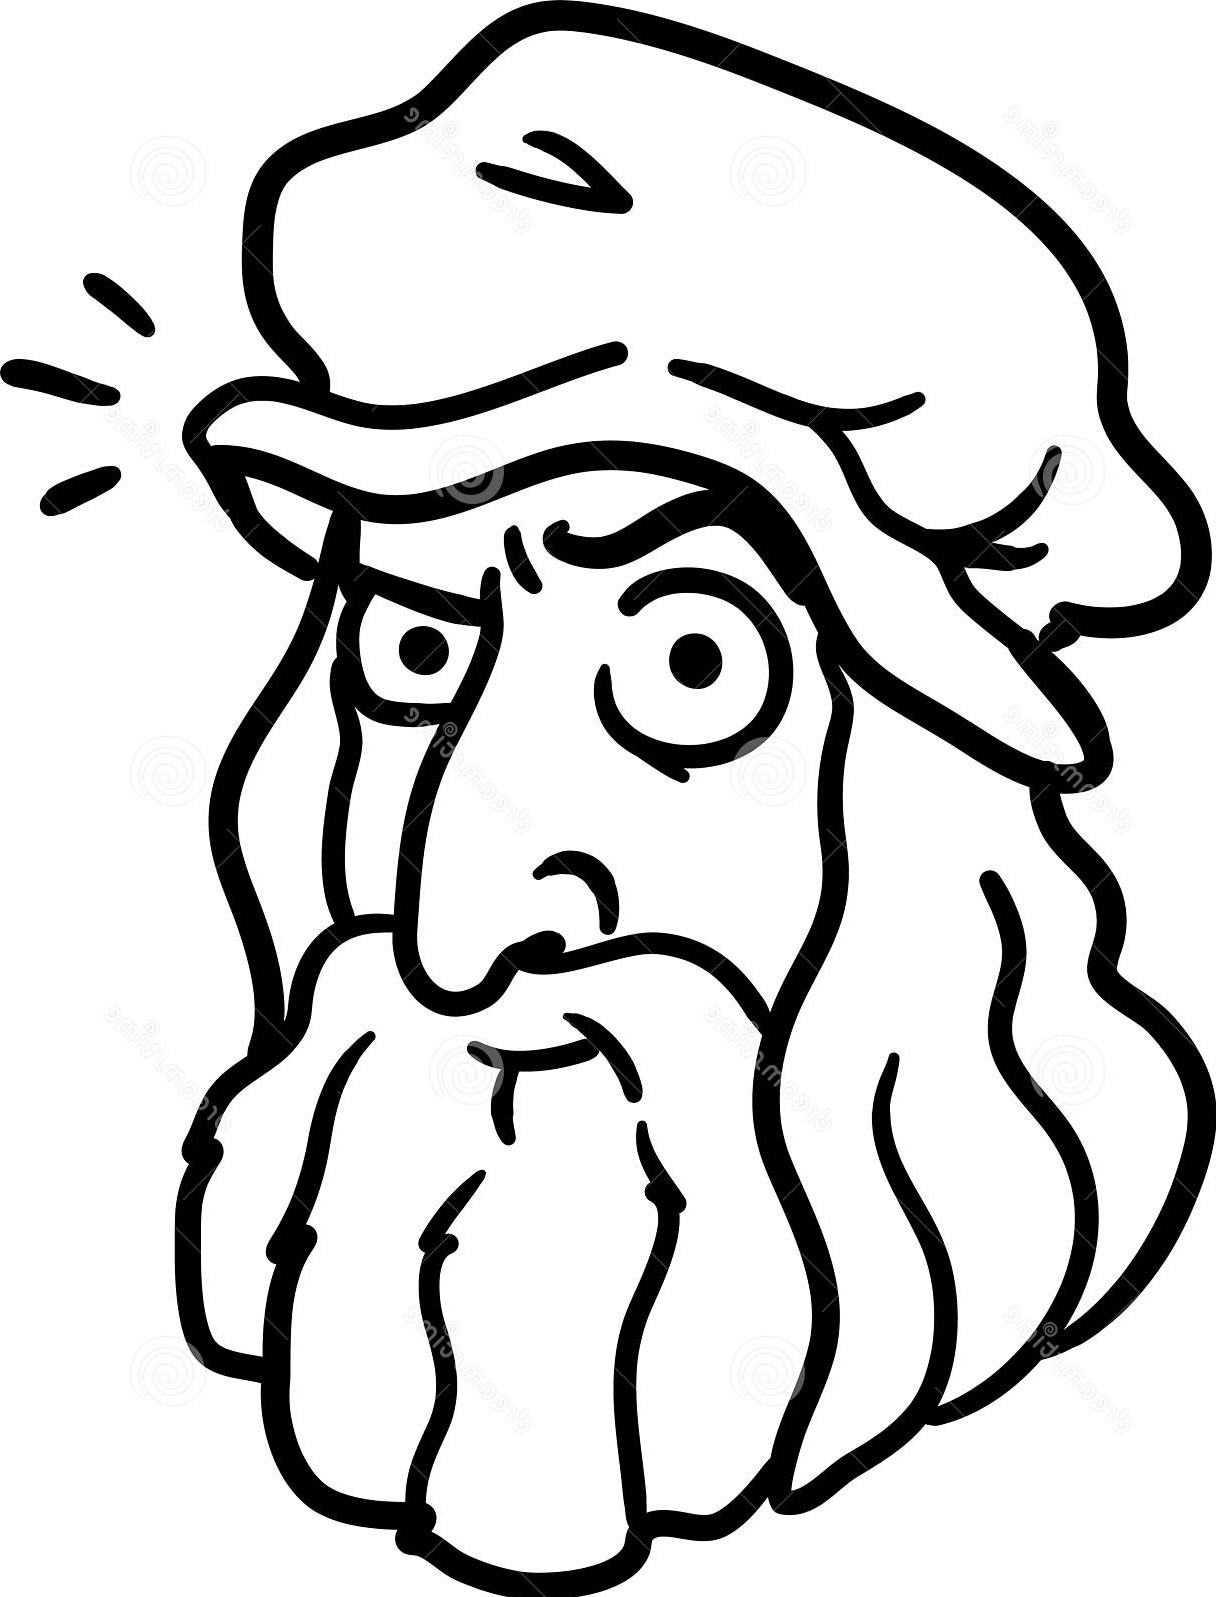 Caricatura de Leonardo Da Vinci